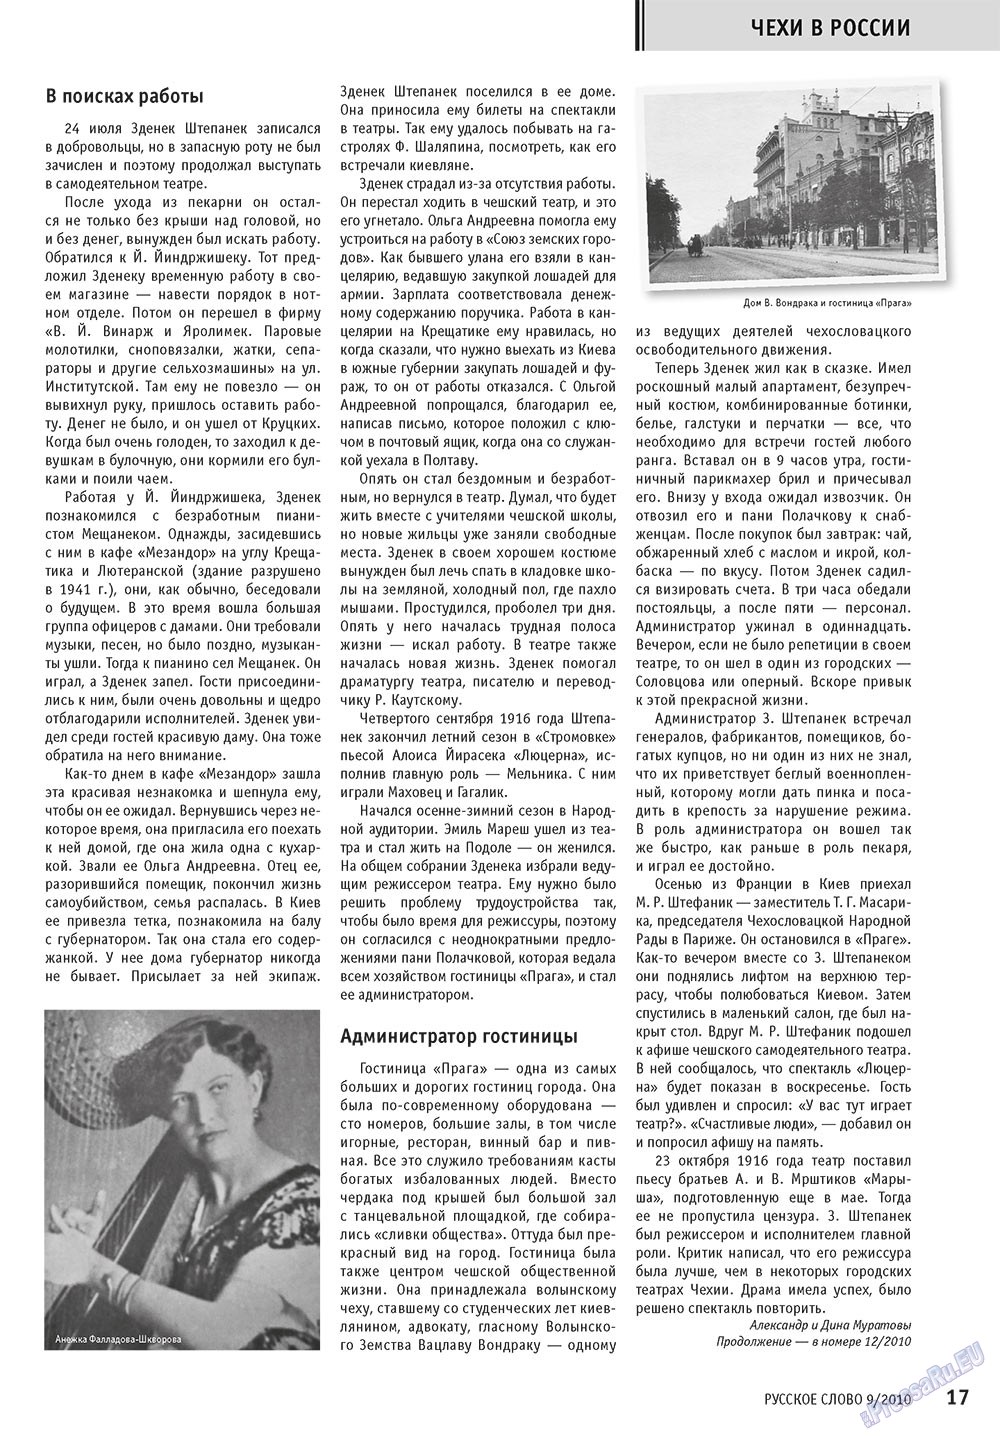 Русское слово, журнал. 2010 №9 стр.19